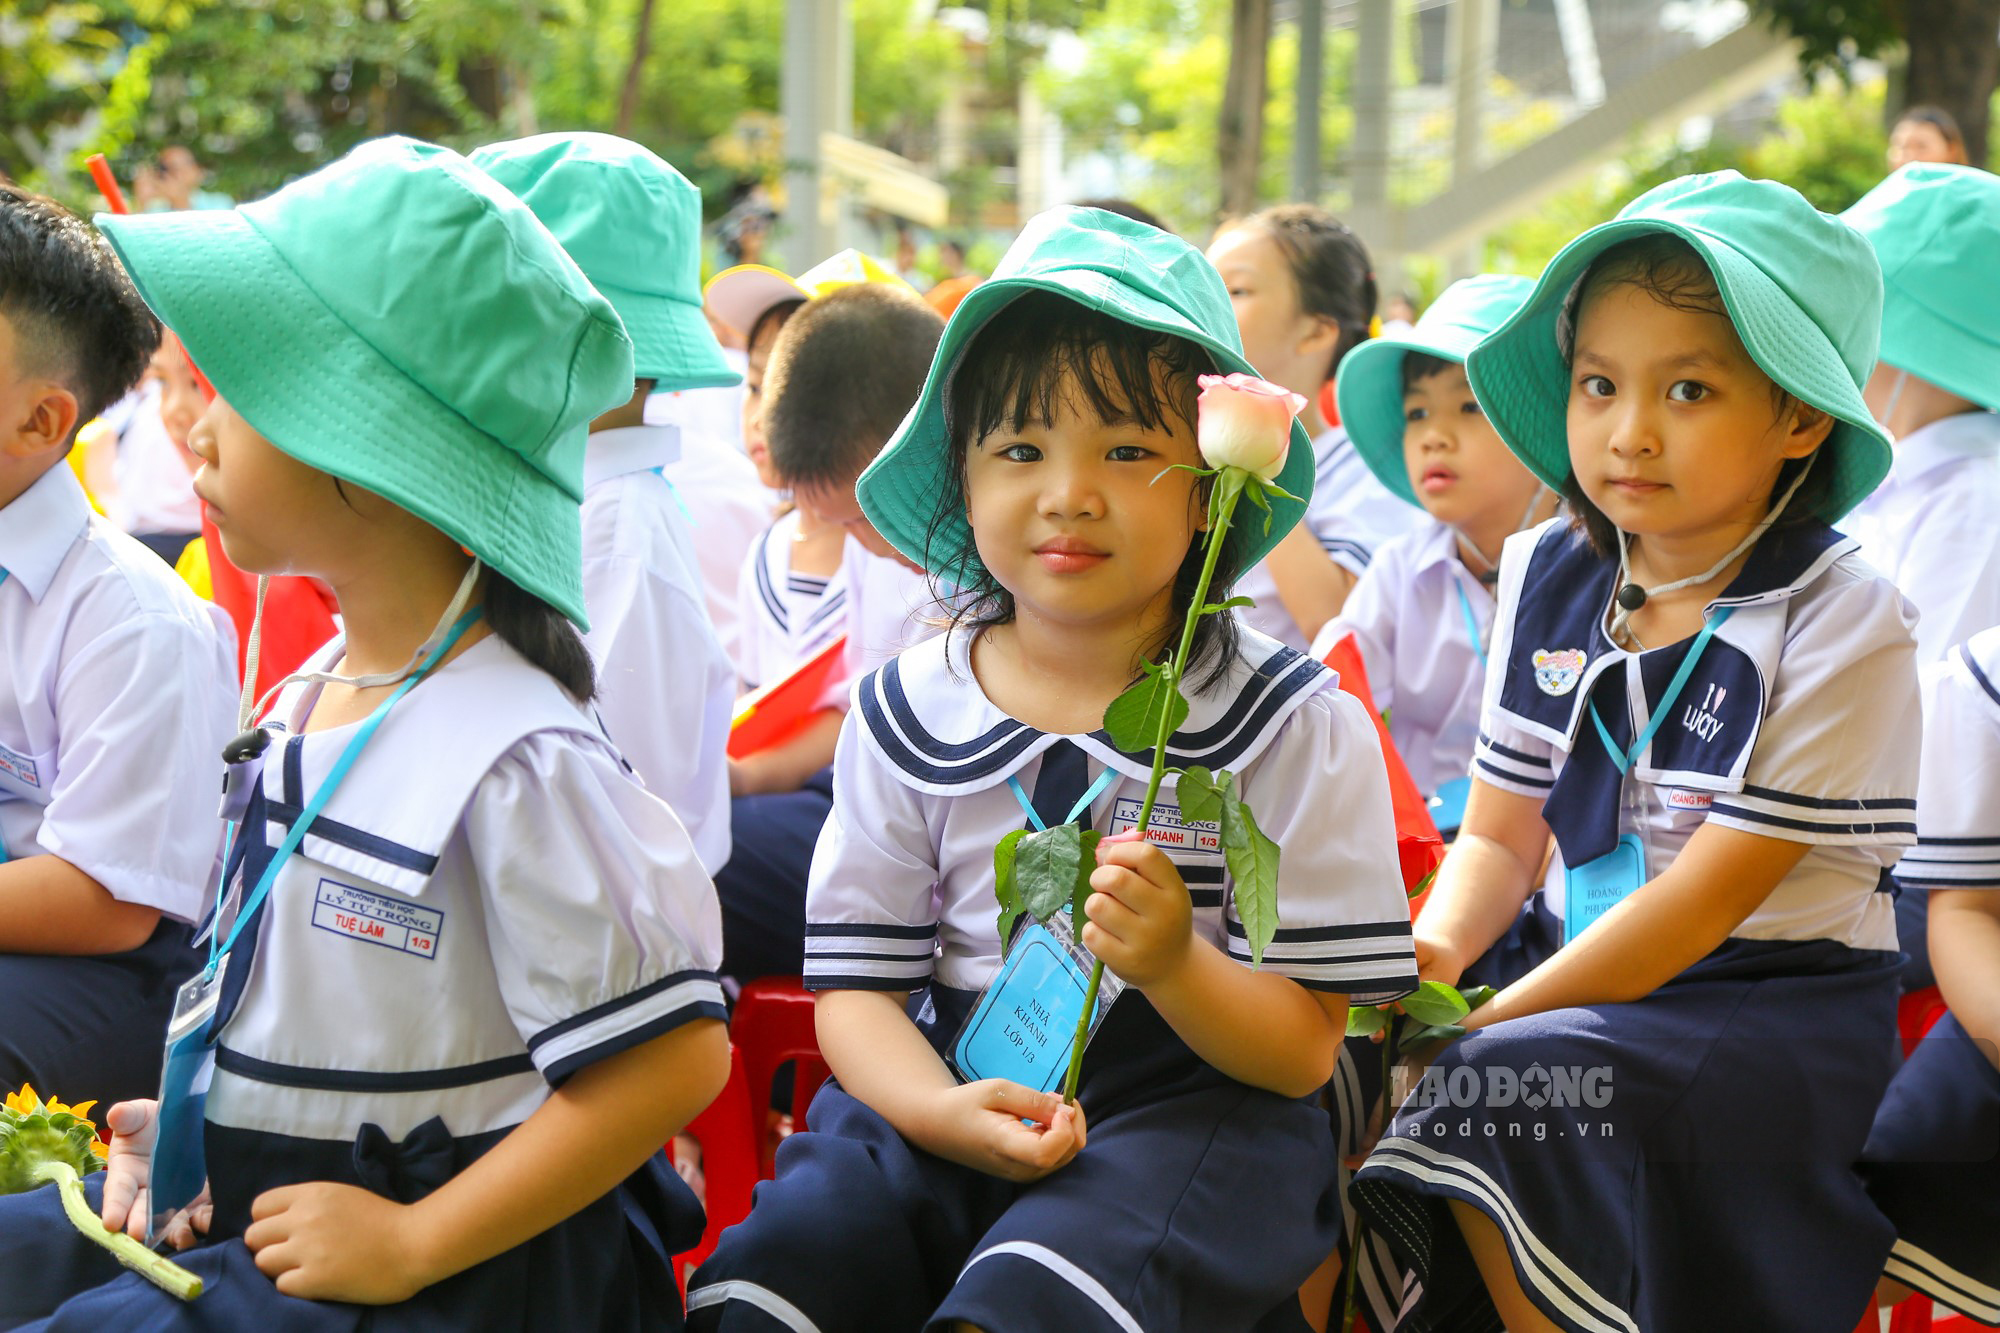 Các em học sinh lớp 1 được cầm hoa, cầm cờ với vẻ mặt rạng ngời trong ngày khai giảng ở ngôi trường mới.